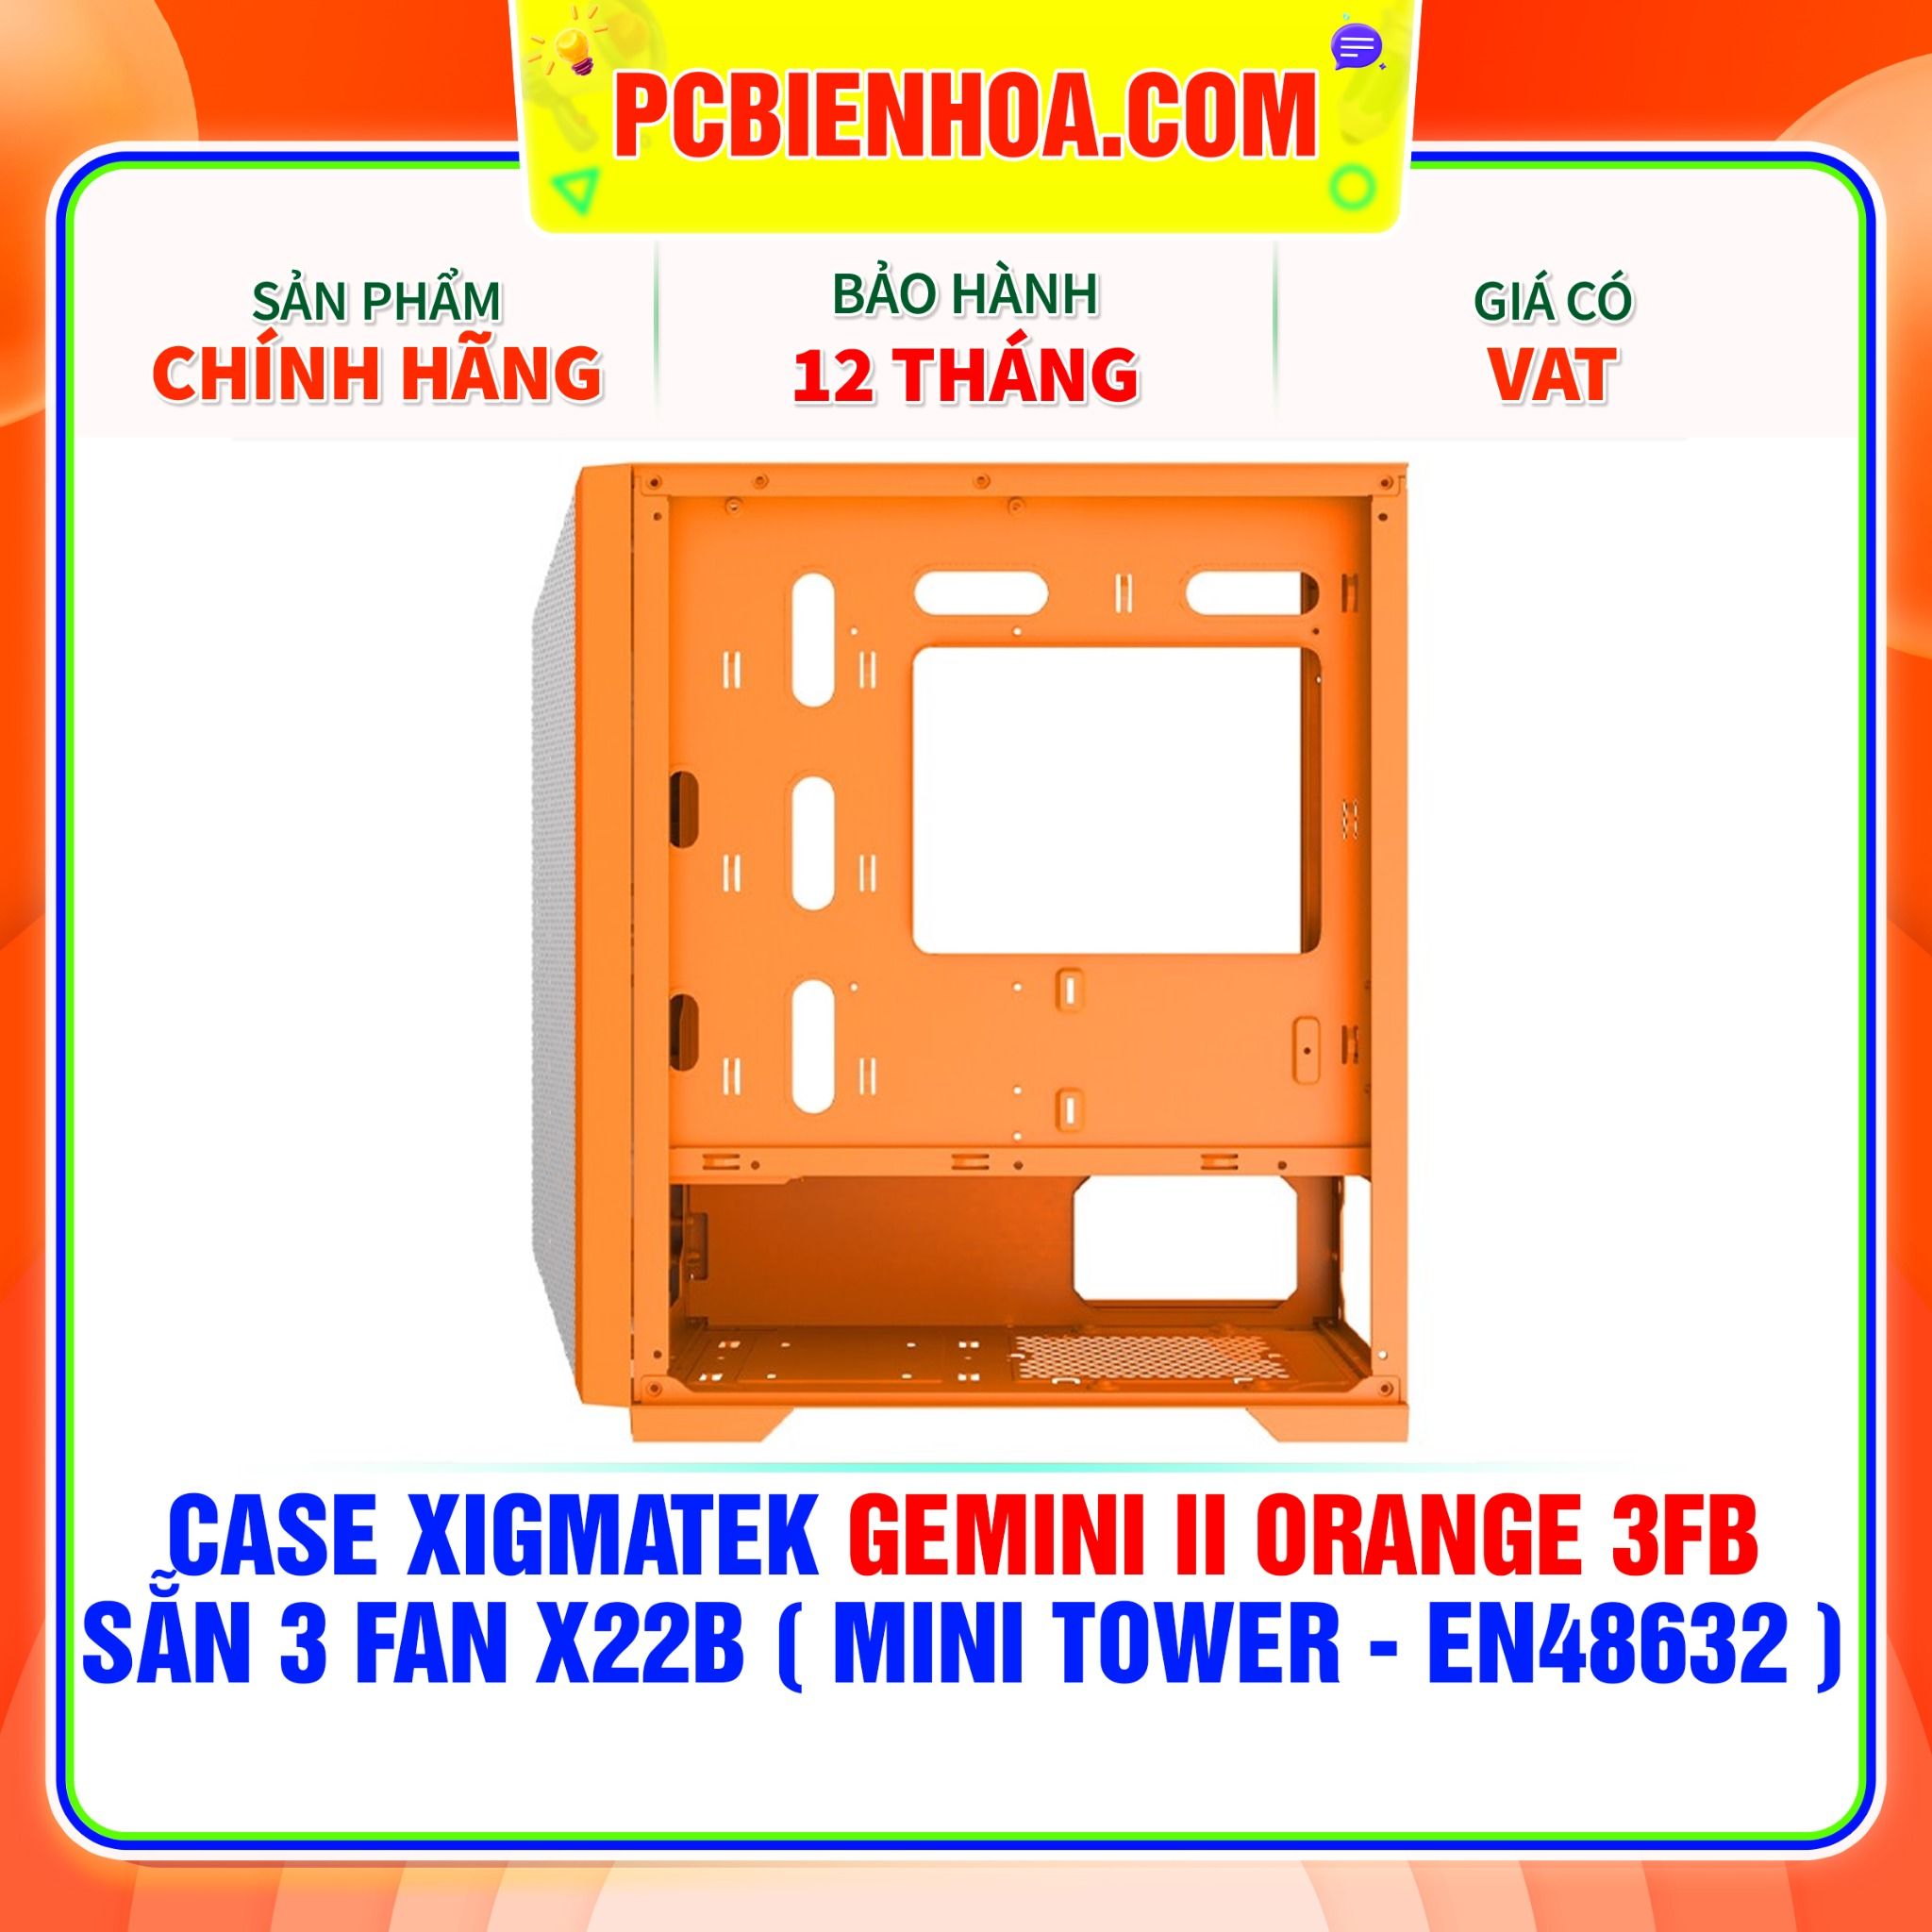  CASE XIGMATEK GEMINI II ORANGE 3FB - SẴN 3 FAN X22B ( MINI TOWER - EN48632 ) 